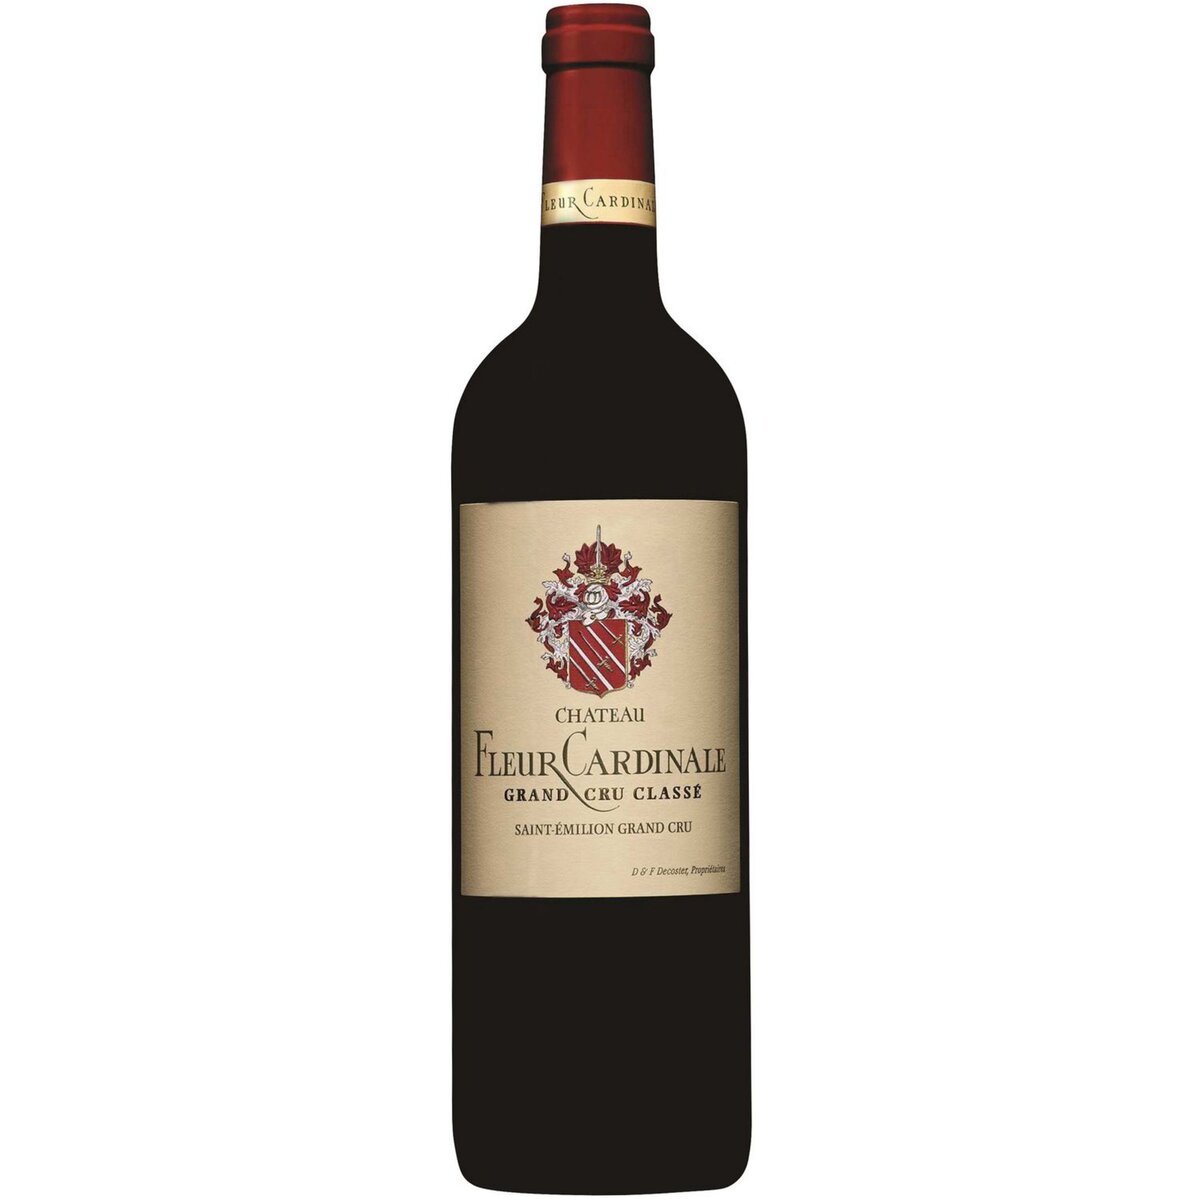 Vin rouge AOP Saint-Emilion grand cru Château Fleur Cardinale 2015 75cl